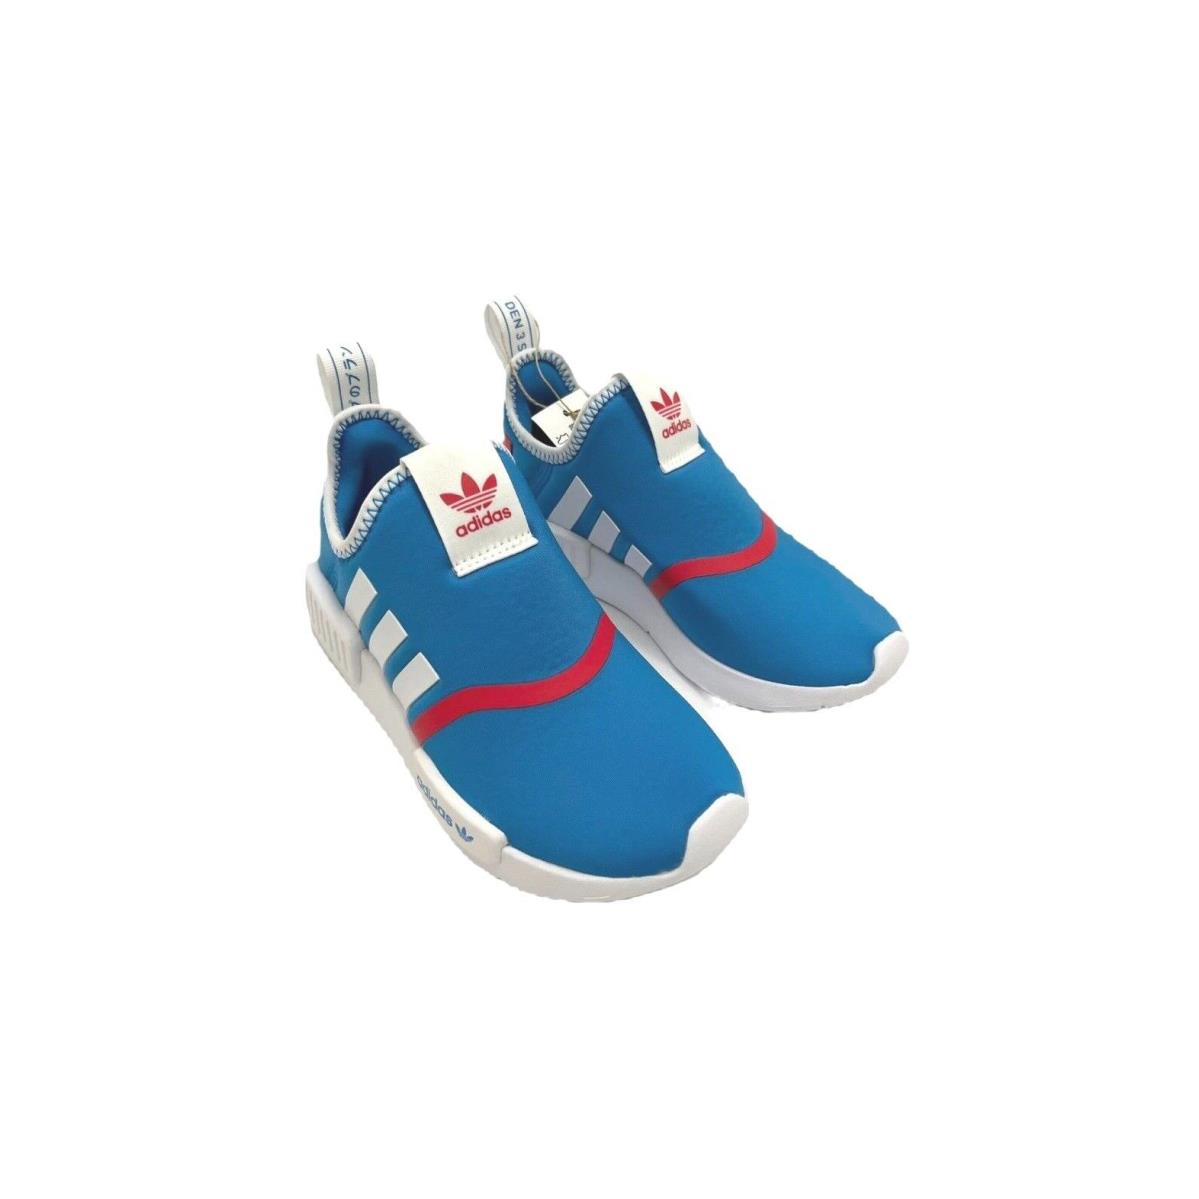 Adidas Kids Preschool Nmd 360 Shoes GY 9155 - Blue Rush/Cloud White/Vivid Red